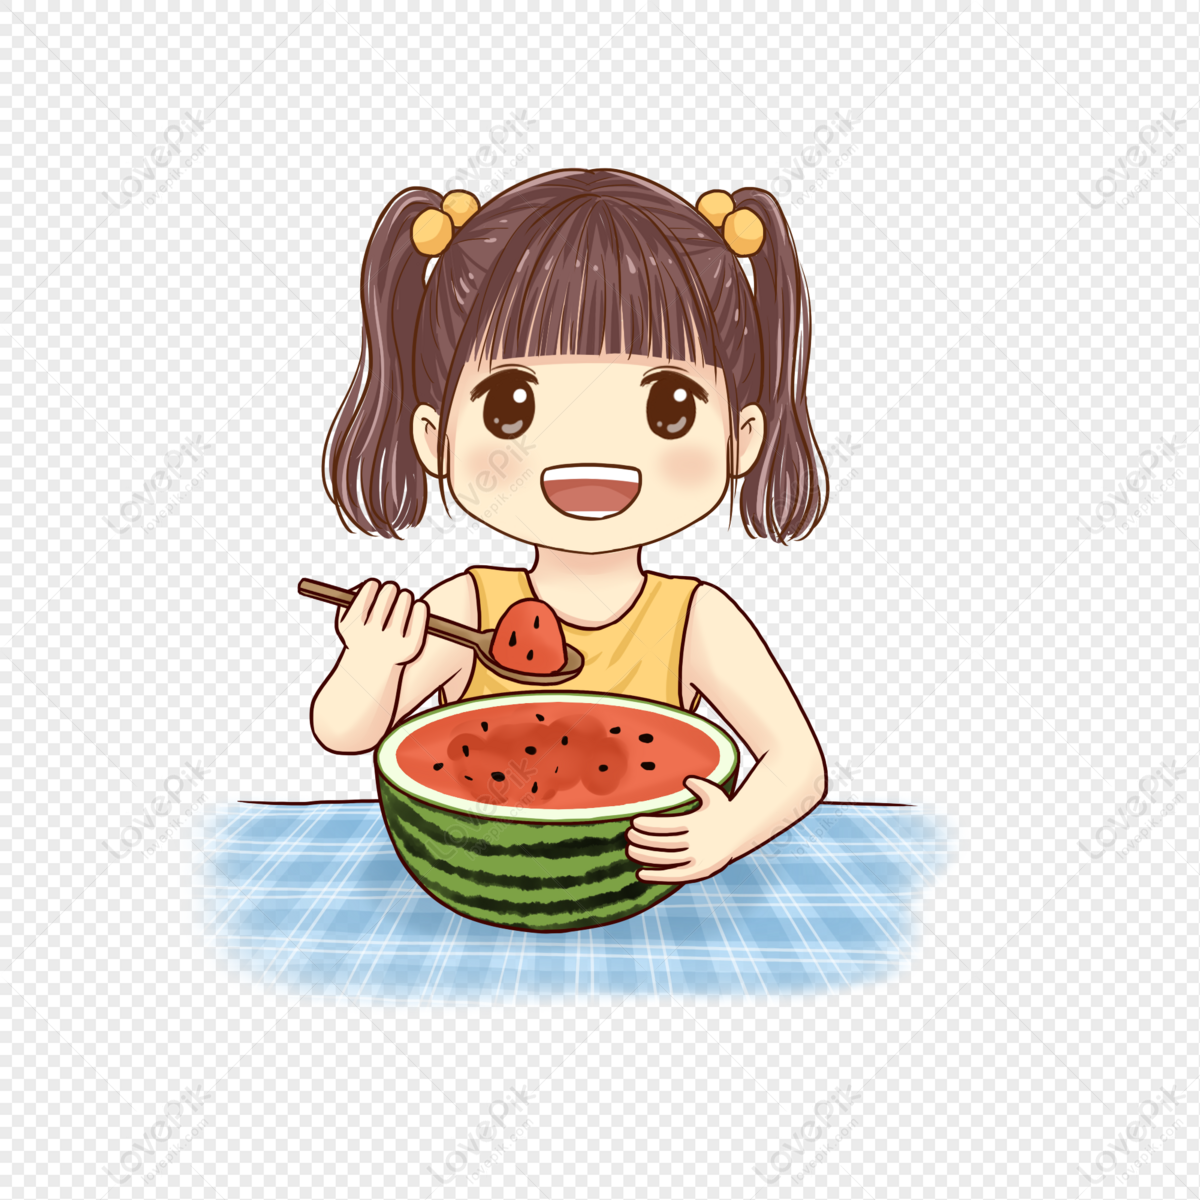 Watermelon: Mùa hè đã đến, cùng thưởng thức món quả ngọt mát trong hình ảnh quả dưa hấu đầy thân thiện và sinh động này. Sự tươi mới của bức tranh chắc chắn sẽ mang đến cho bạn động lực để vui chơi và tận hưởng những ngày nắng đẹp.